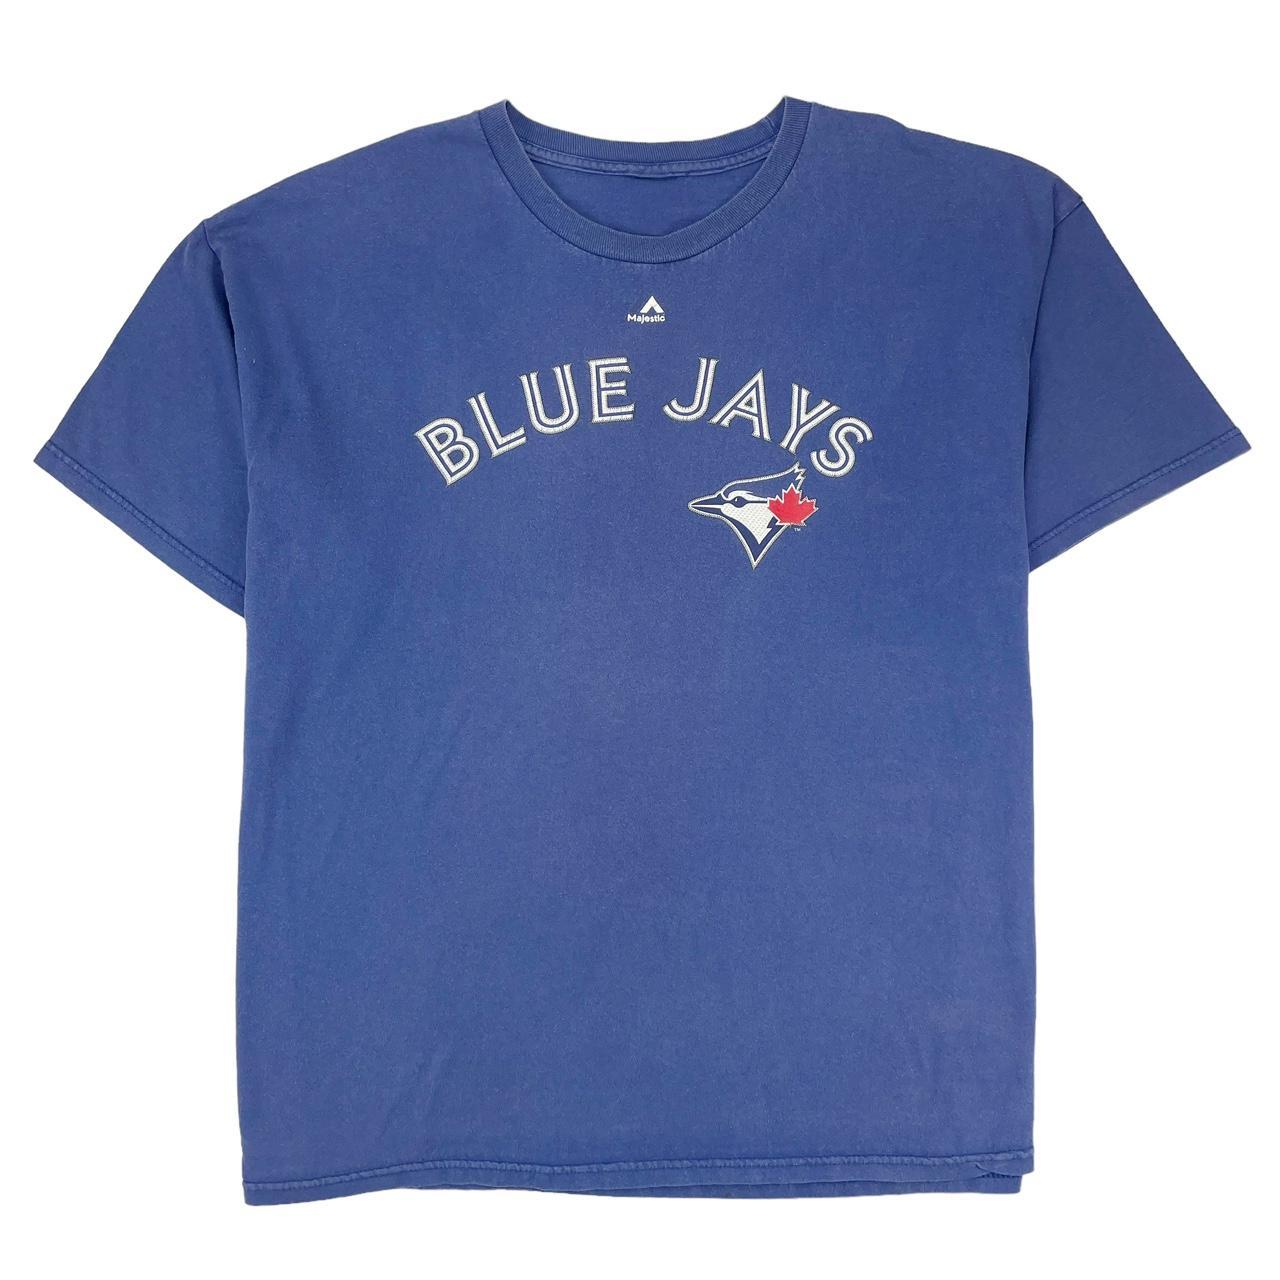 Vintage Toronto Blue jays baseball jersey by - Depop